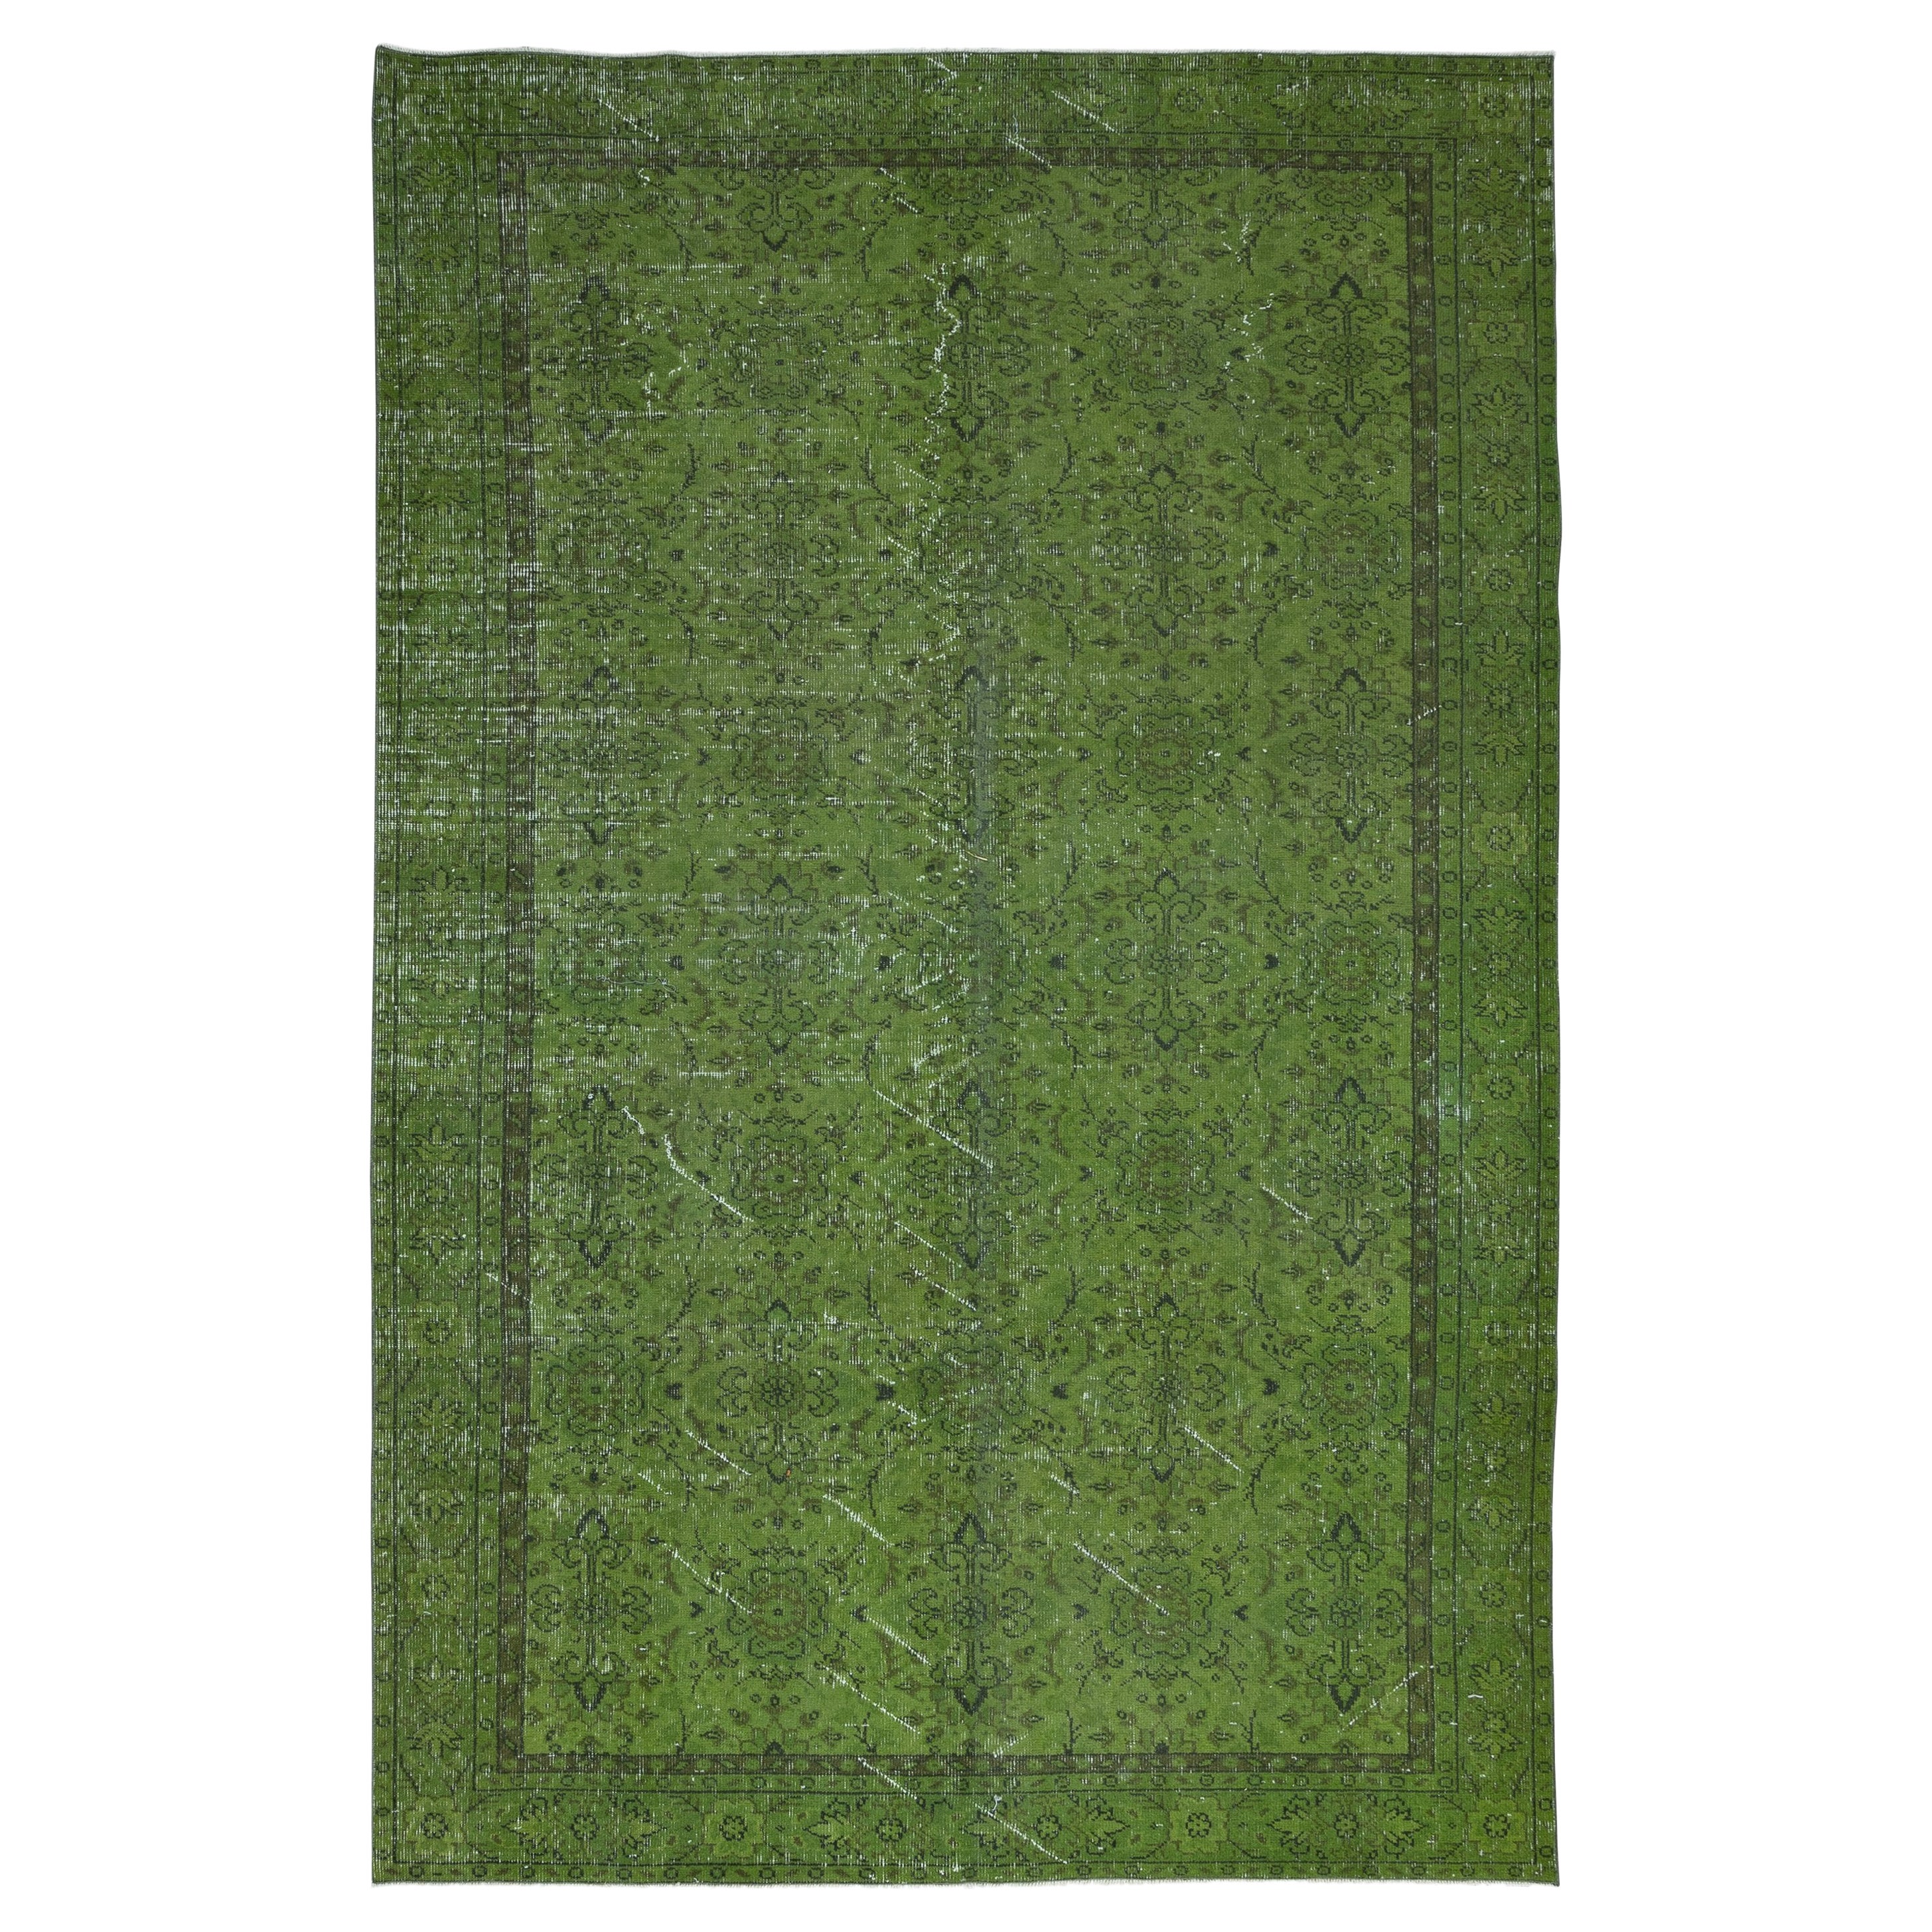 6x9 Ft Modern Green Rug, Flower Design Handmade Carpet, Woolen Floor Covering For Sale